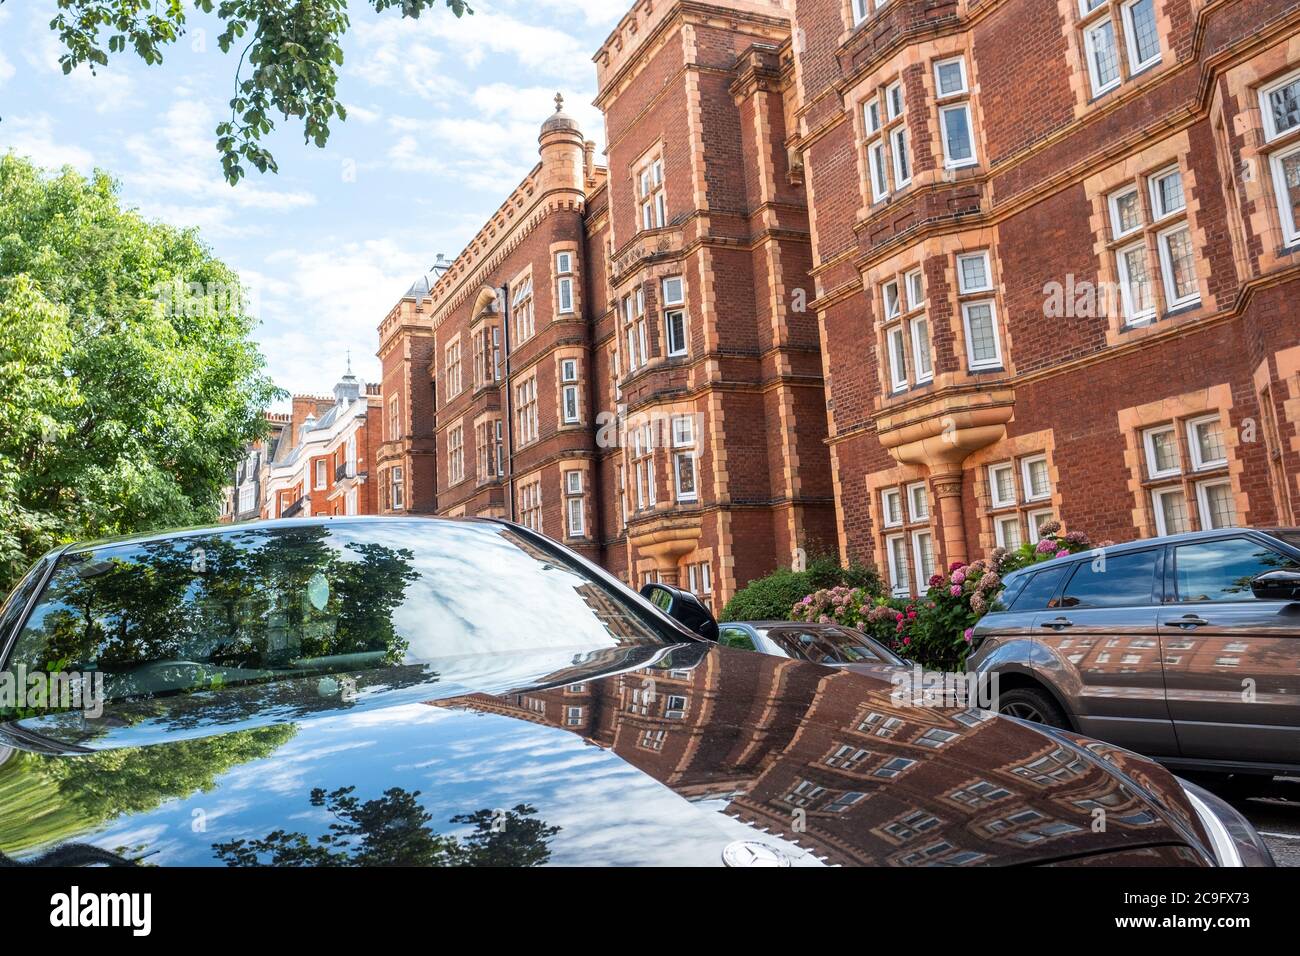 Londres, juillet, 2020: Rue résidentielle de belles maisons de ville de Londres en terrasses de briques rouges à Kensington court, à l'ouest de Londres Banque D'Images